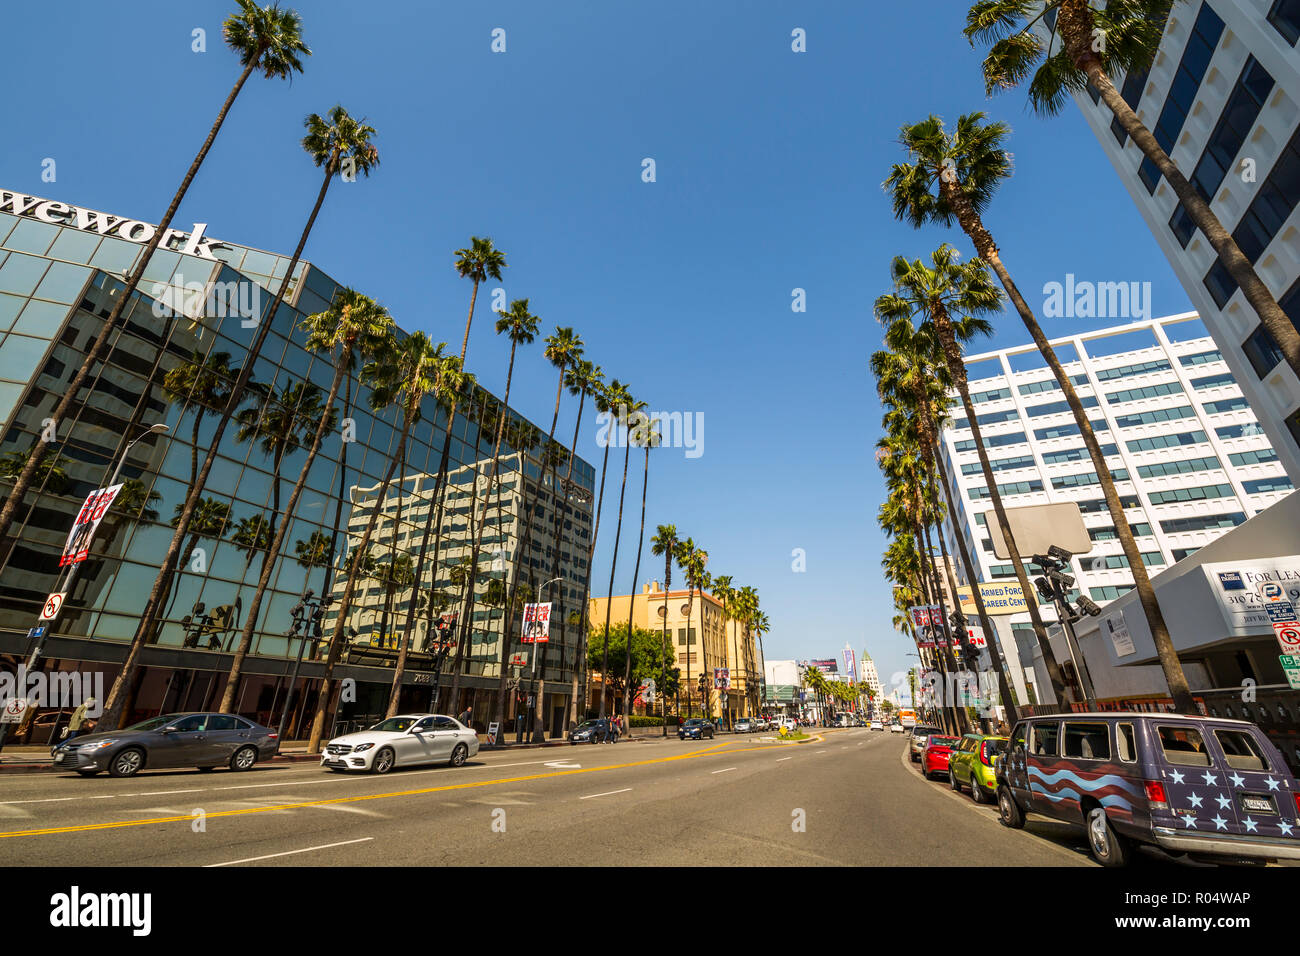 Palmiers et de l'architecture contemporaine sur Hollywood Boulevard, Los Angeles, Californie, États-Unis d'Amérique, Amérique du Nord Banque D'Images